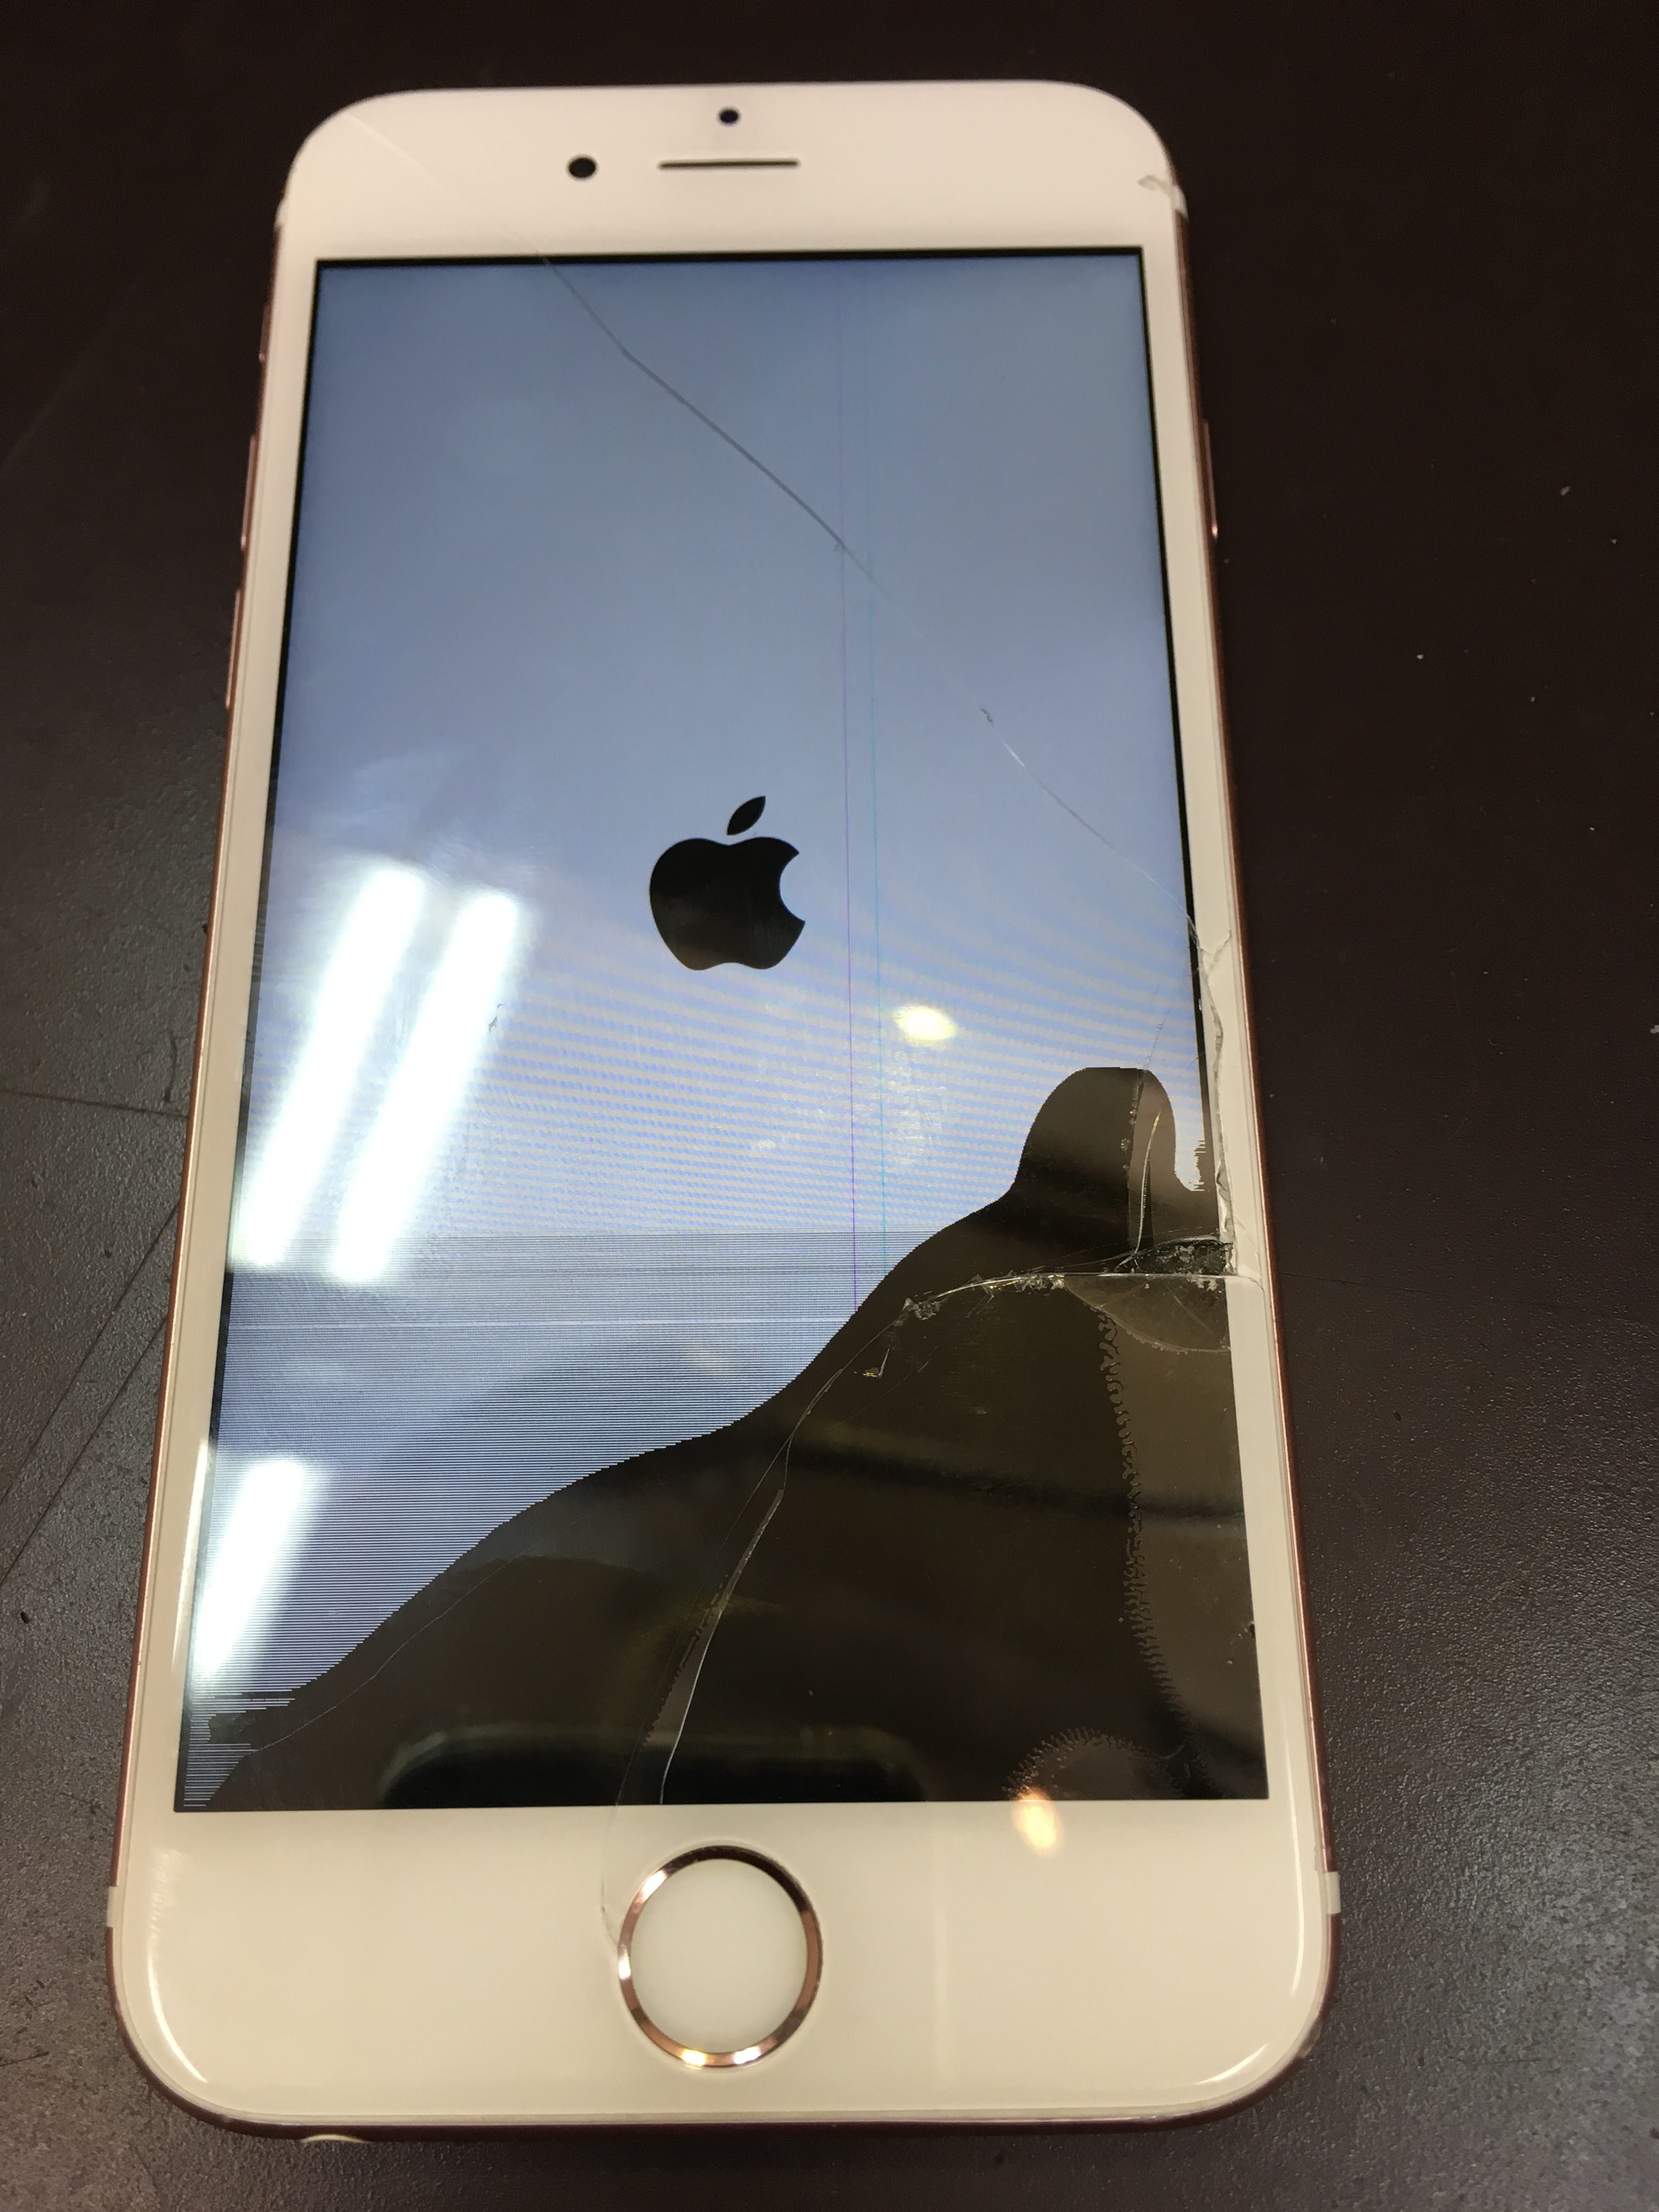 iPhoneを画面割れから守ってあげましょう～！の巻 – 沖縄 iPhone修理 スマイルファクトリー